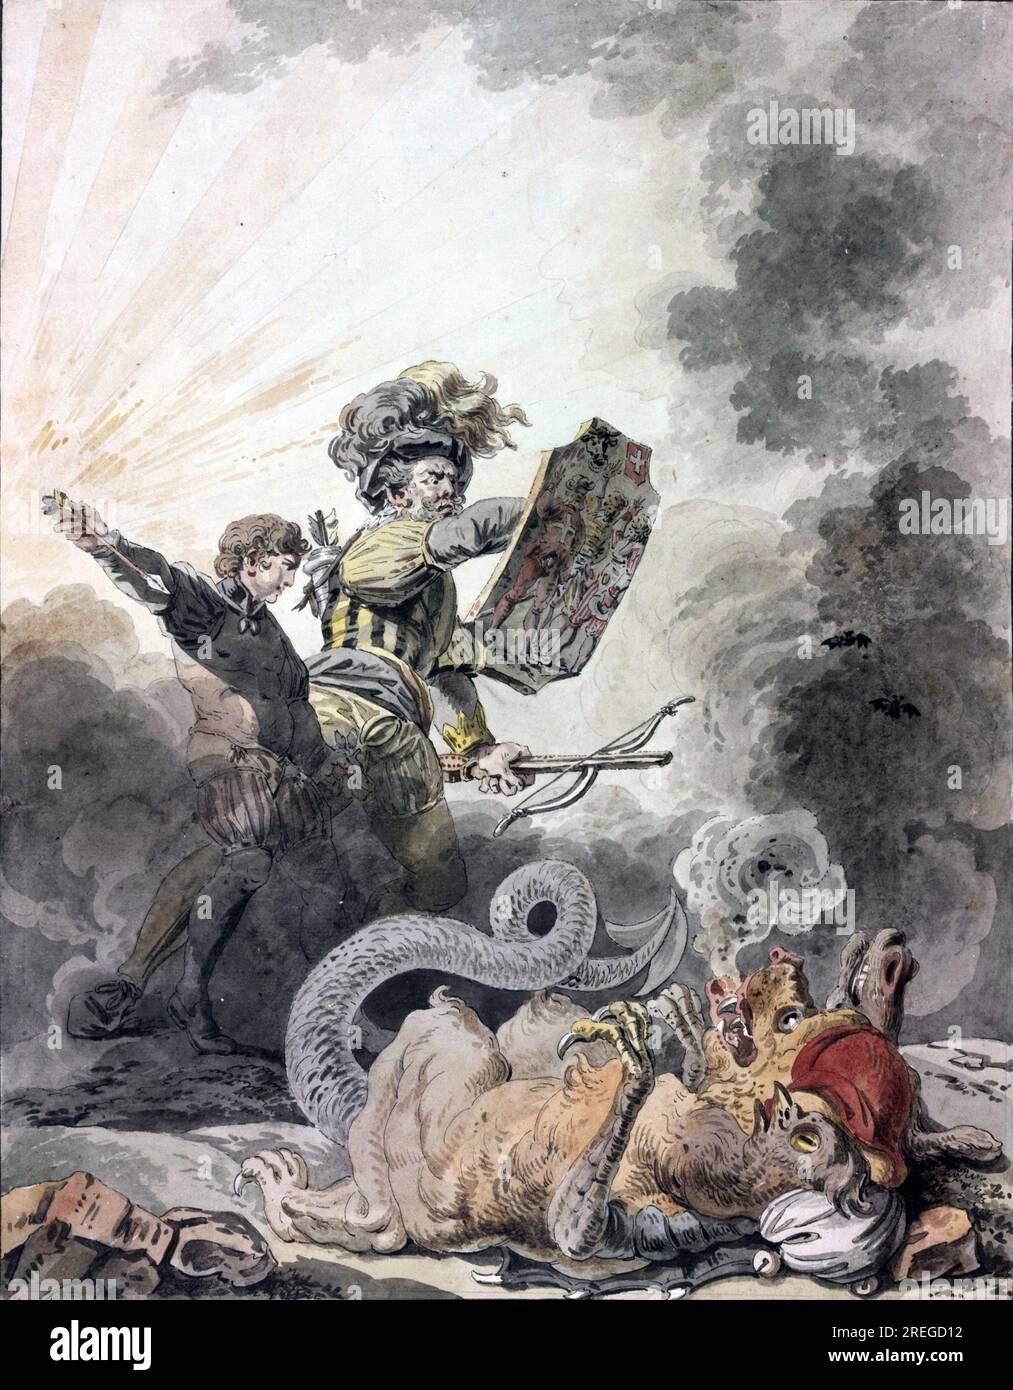 Un allégorique William Tell vainquant la chimère de la Révolution française (1798). Peinture de Dunker. Banque D'Images